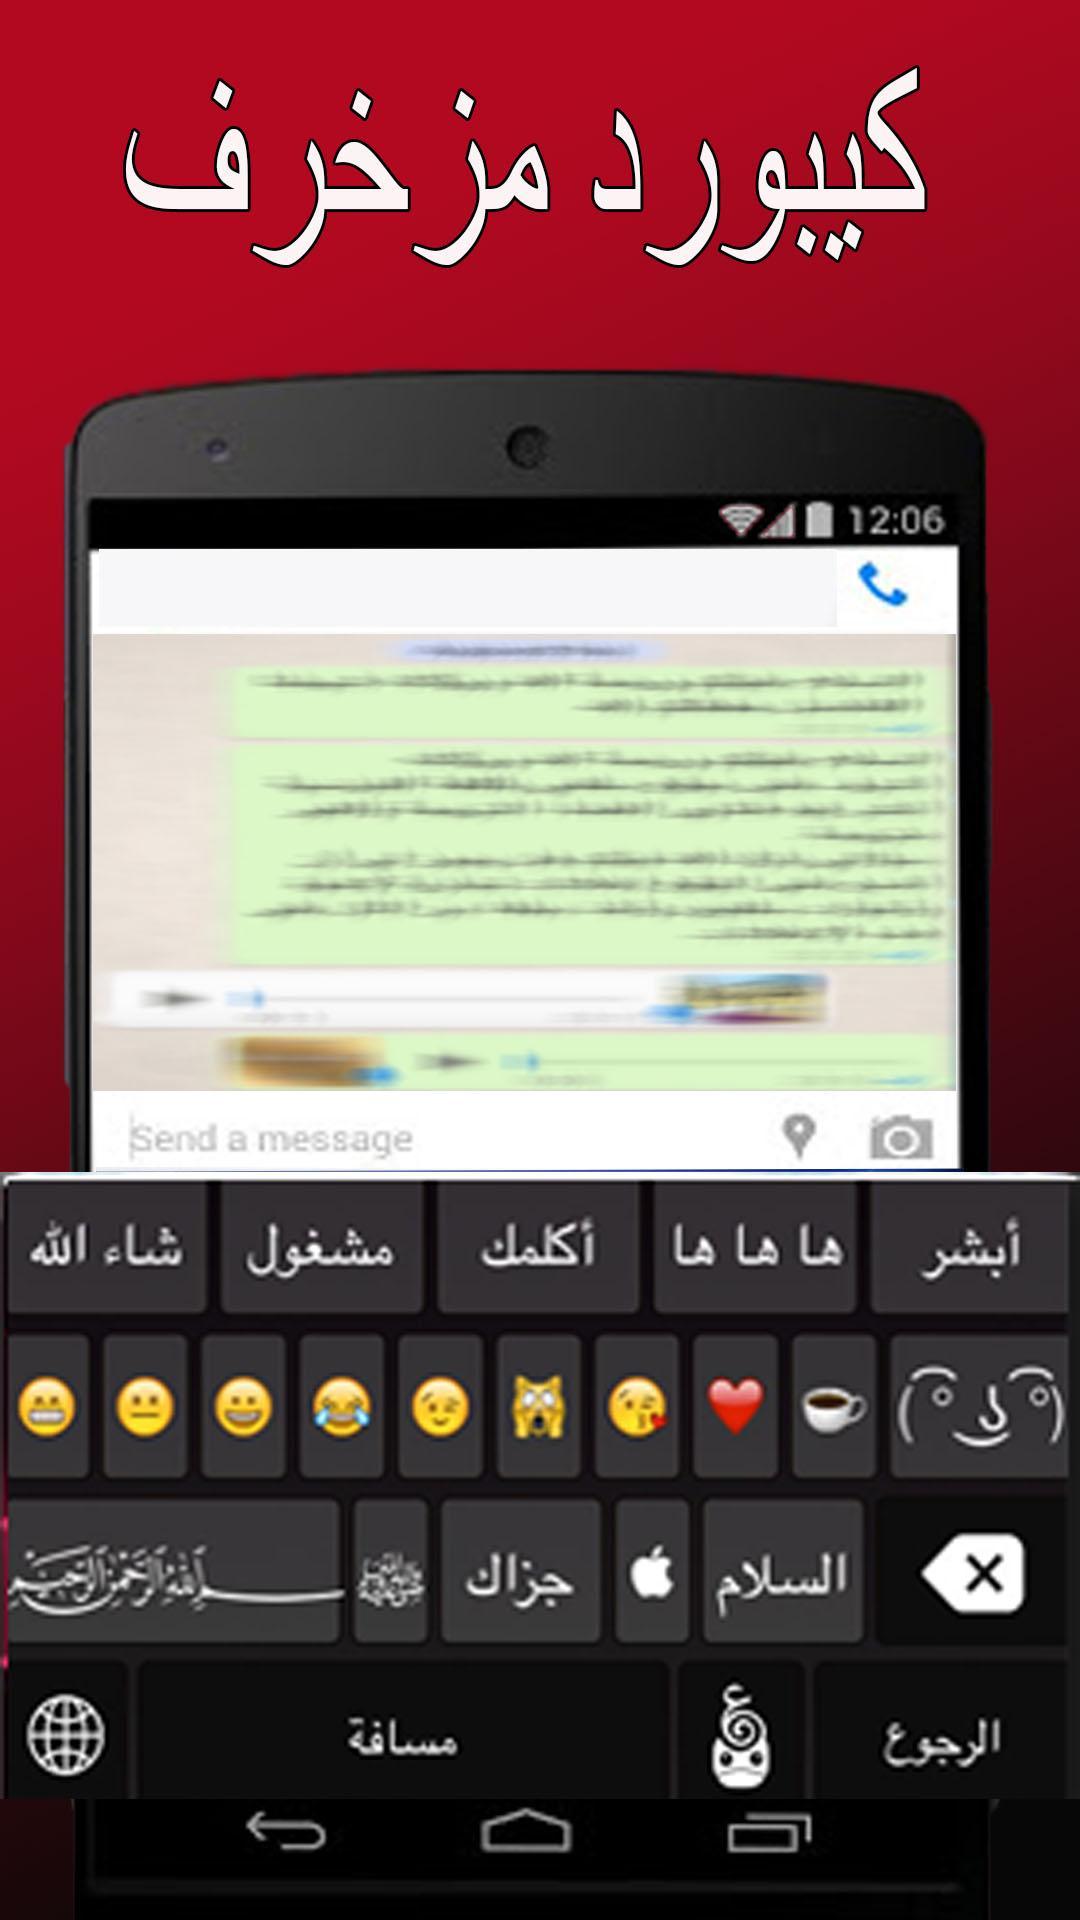 APK كيبورد مزخرف عربي وانجليزي untuk Muat Turun Android